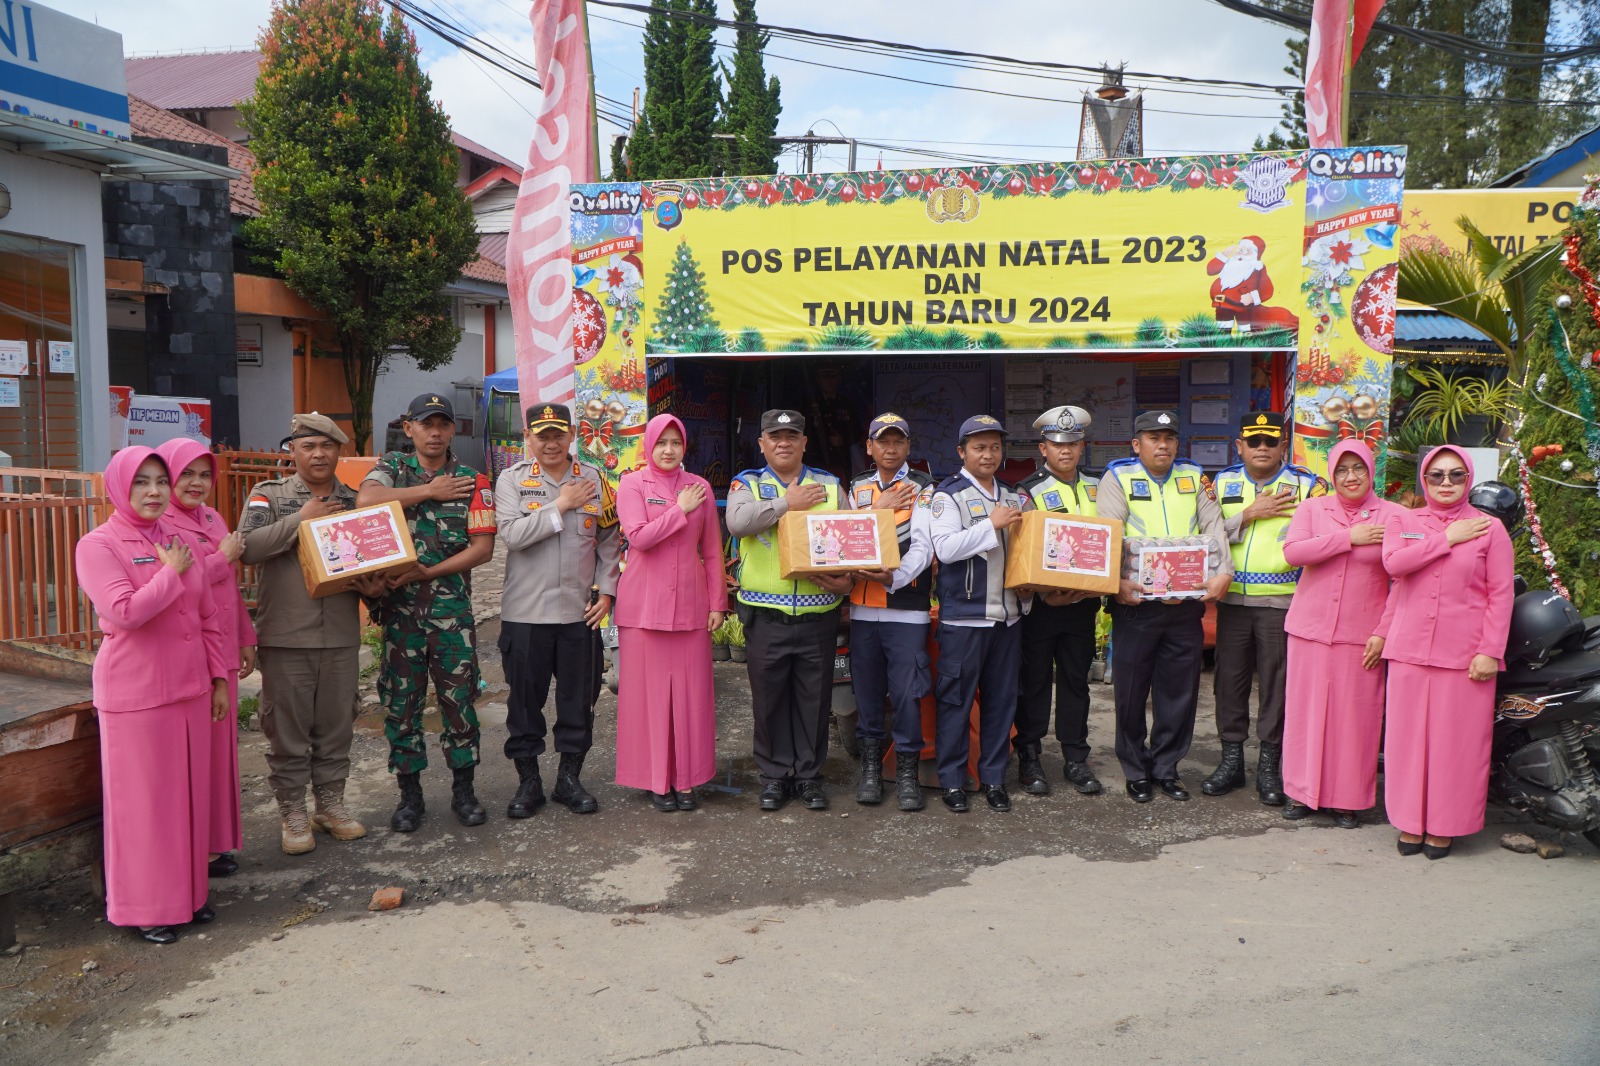 Kapolres Tanah Karo Bersama Ketua Bhayangkari, Berikan Bingkisan Tali Asi ke Personil Pos Pelayanan dan Pengamanan Ops Lilin